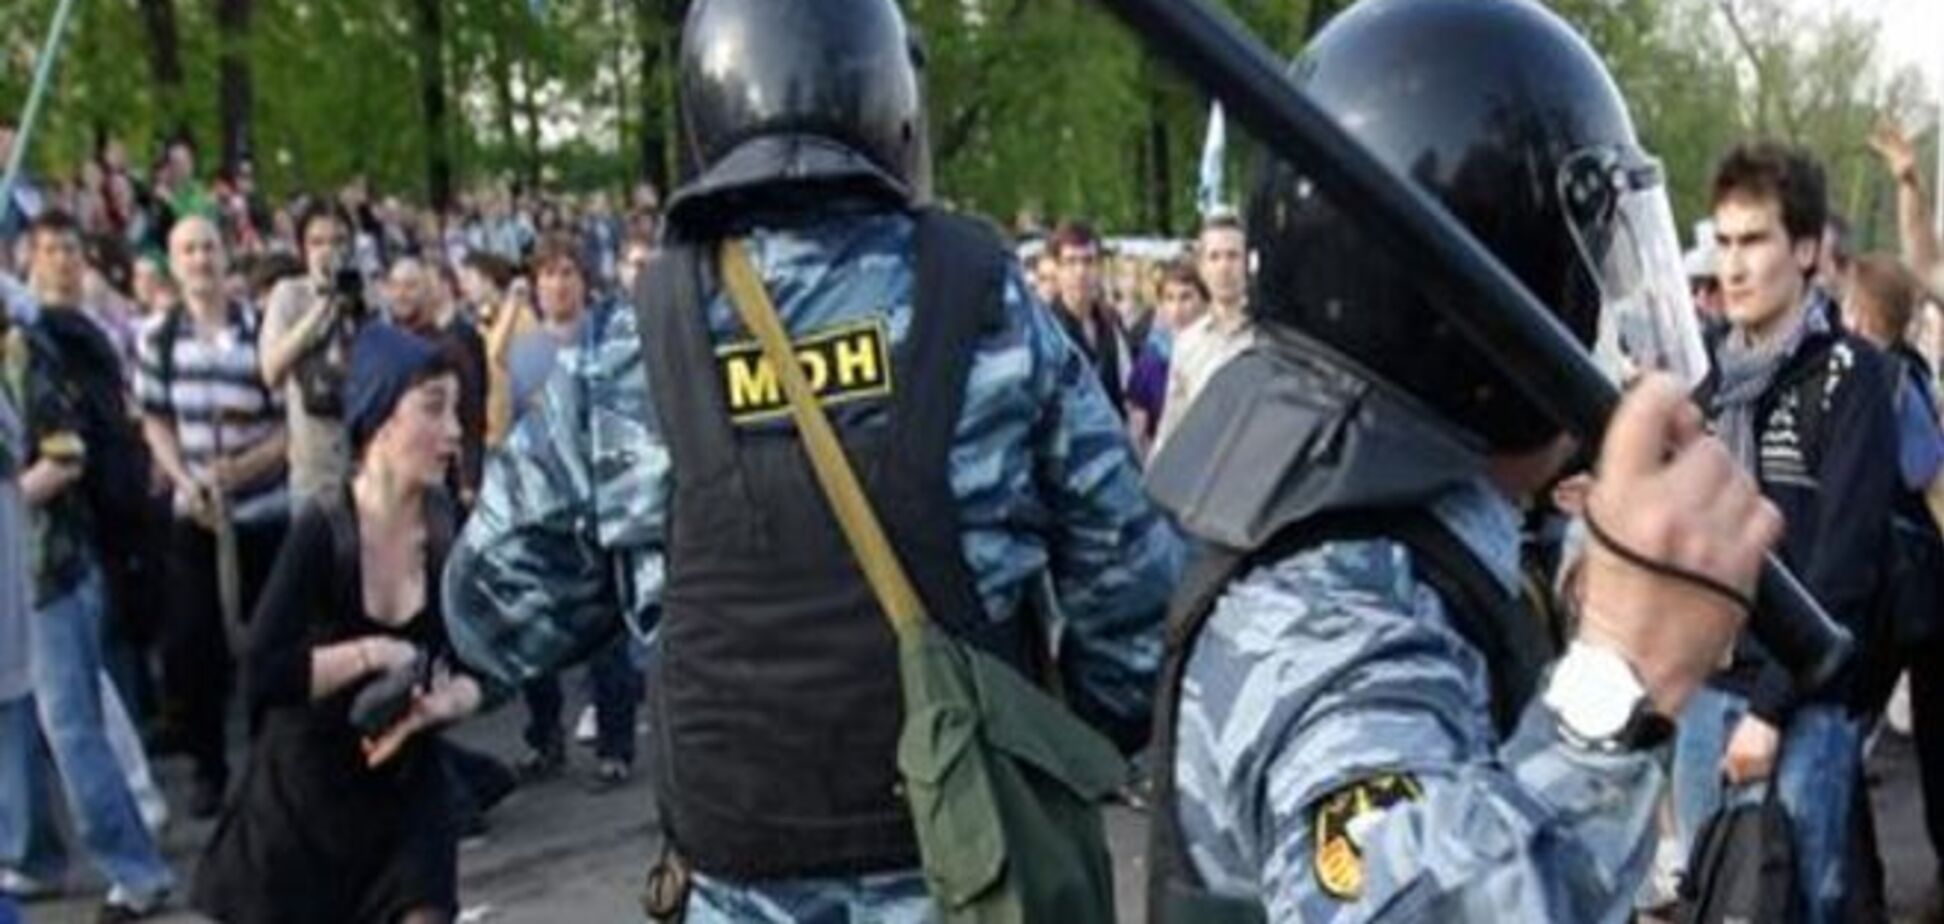 Блогозрение: Трехлетие событий на Болотной - от протеста осталась только память